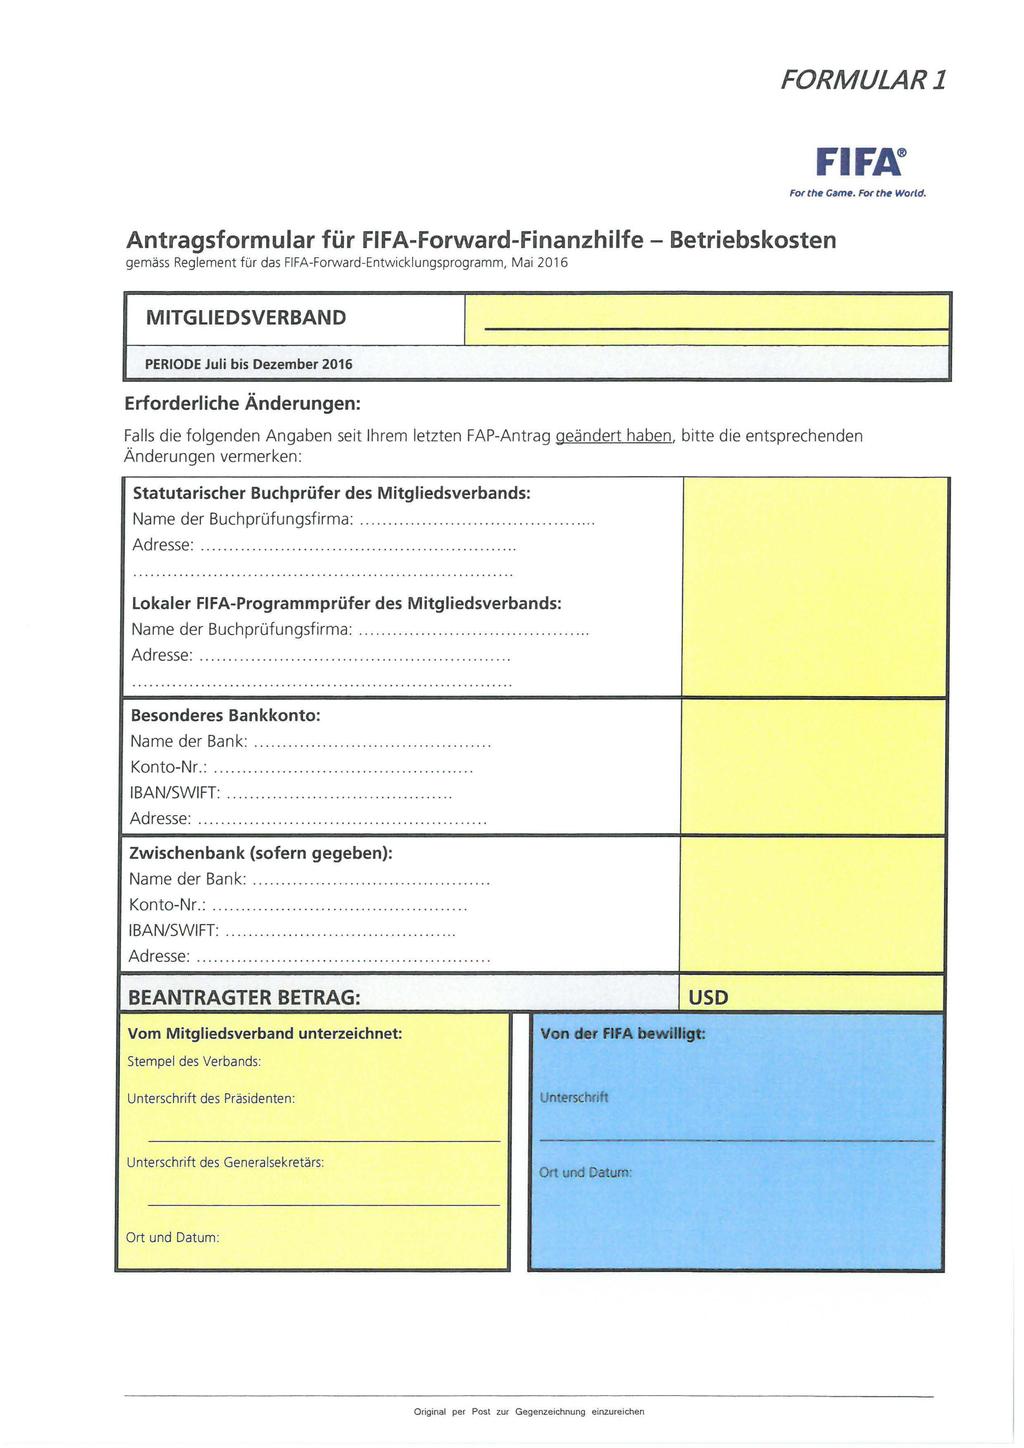 FORMULAR 1 Antragsformular für FIFAForwardFinanzhilfe Betriebskosten gemäss Reglement für das FIFAForwardEntwicklungsprogramm, Mai 2016 FIFN For the Came. For the Wartd.